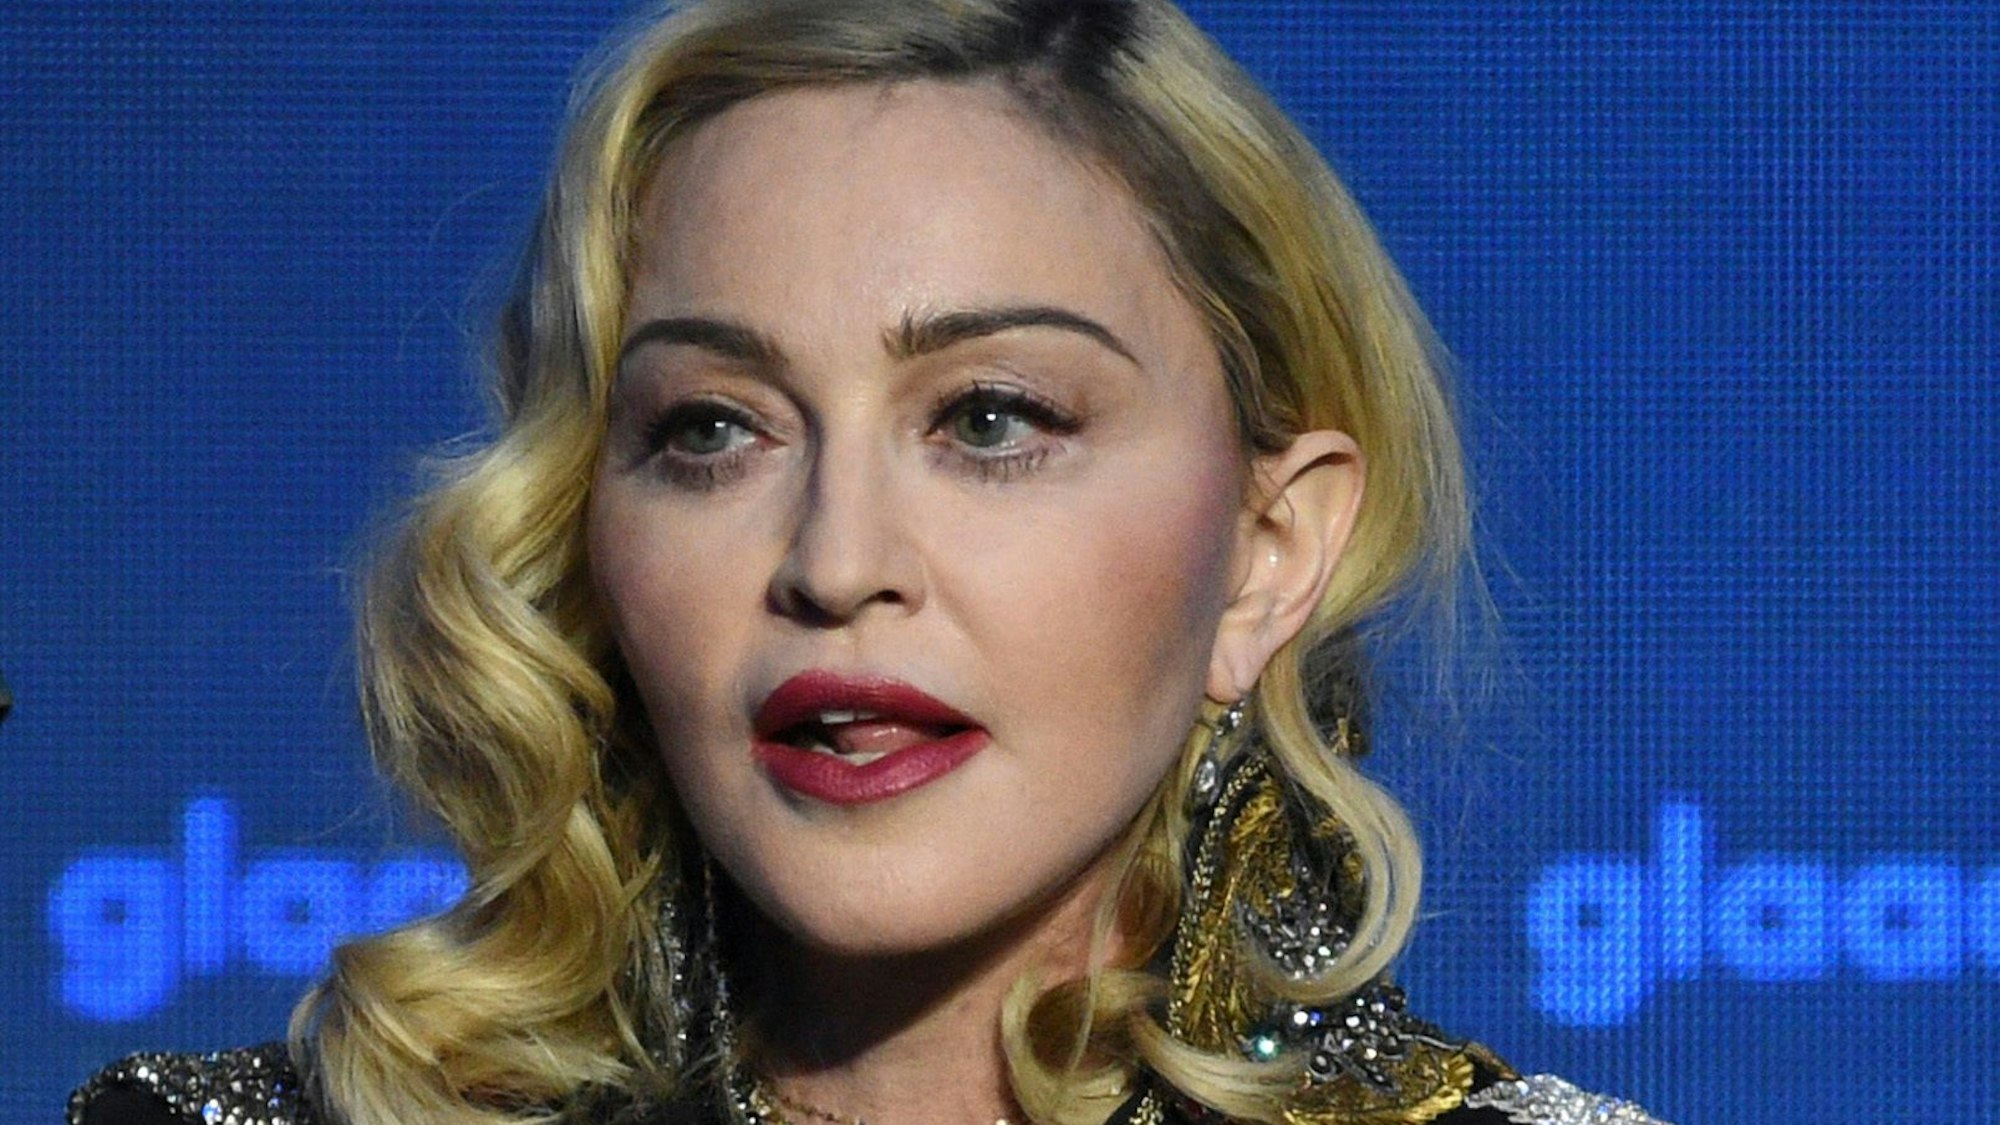 Madonna, US-amerikanische Sängerin, nimmt den „Advocate for Change-Award“ bei den 30. jährlichen GLAAD Media Awards entgegen.